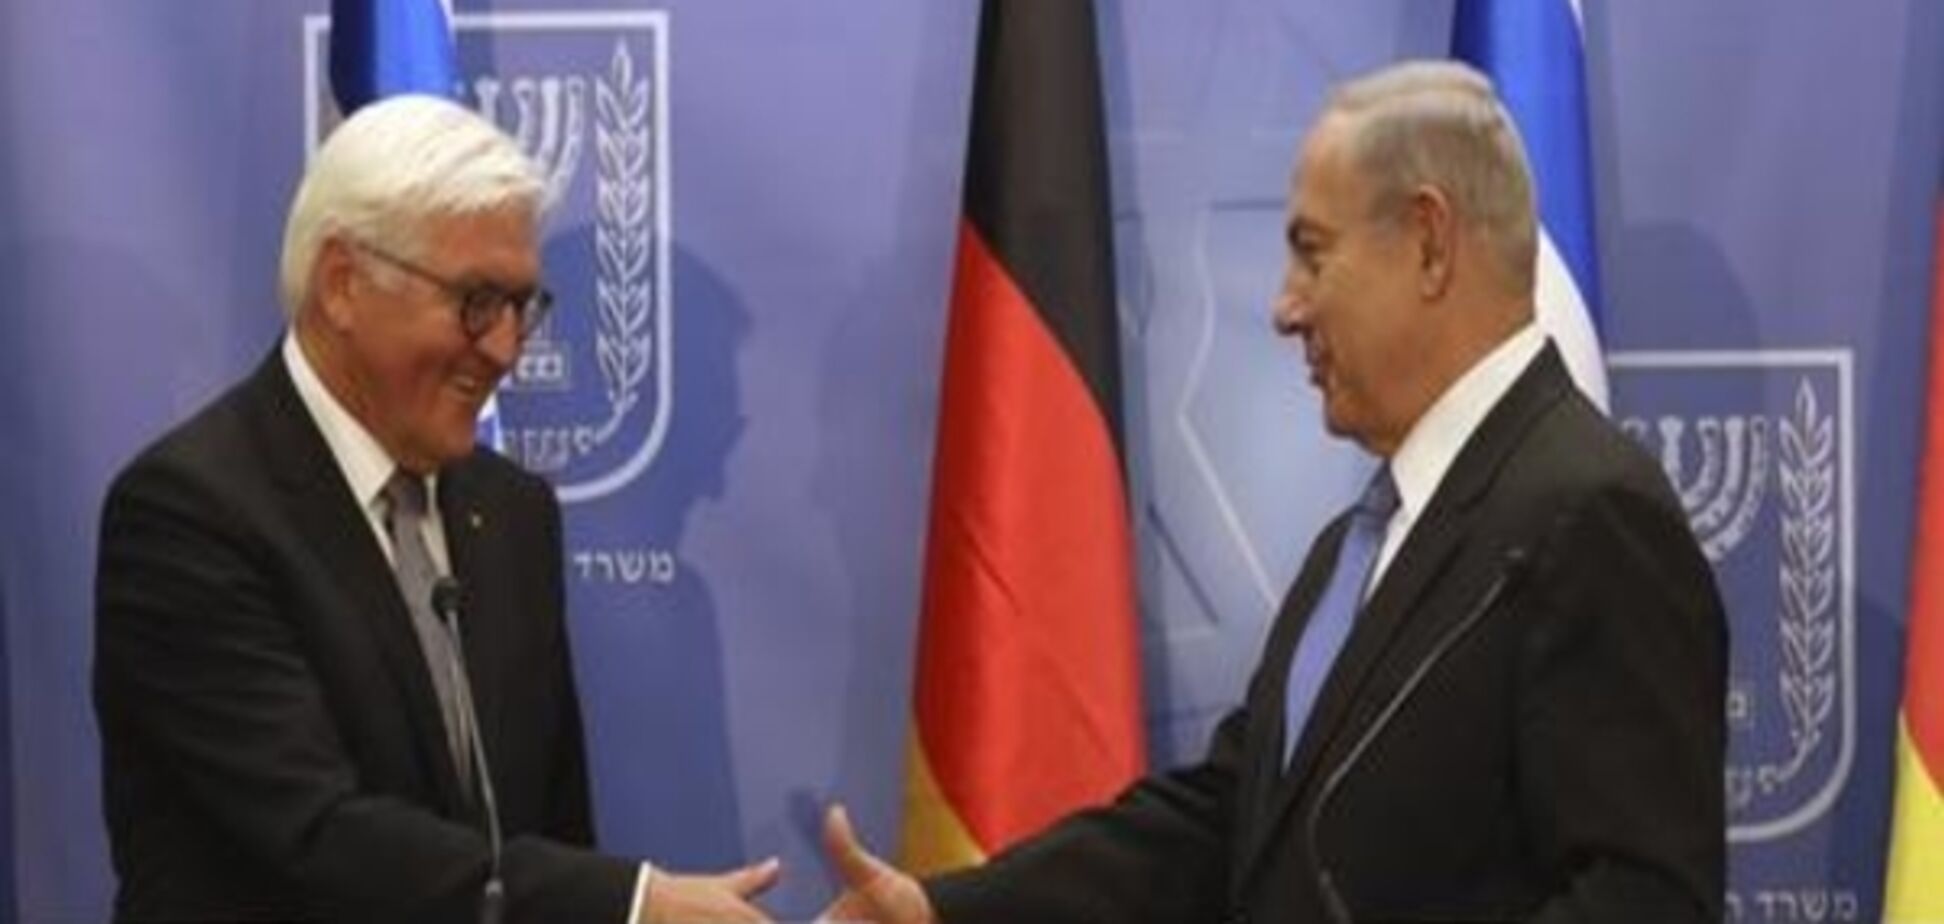 Німецький президент наголосив на дружбі з Ізраїлем після дипломатичної суперечки